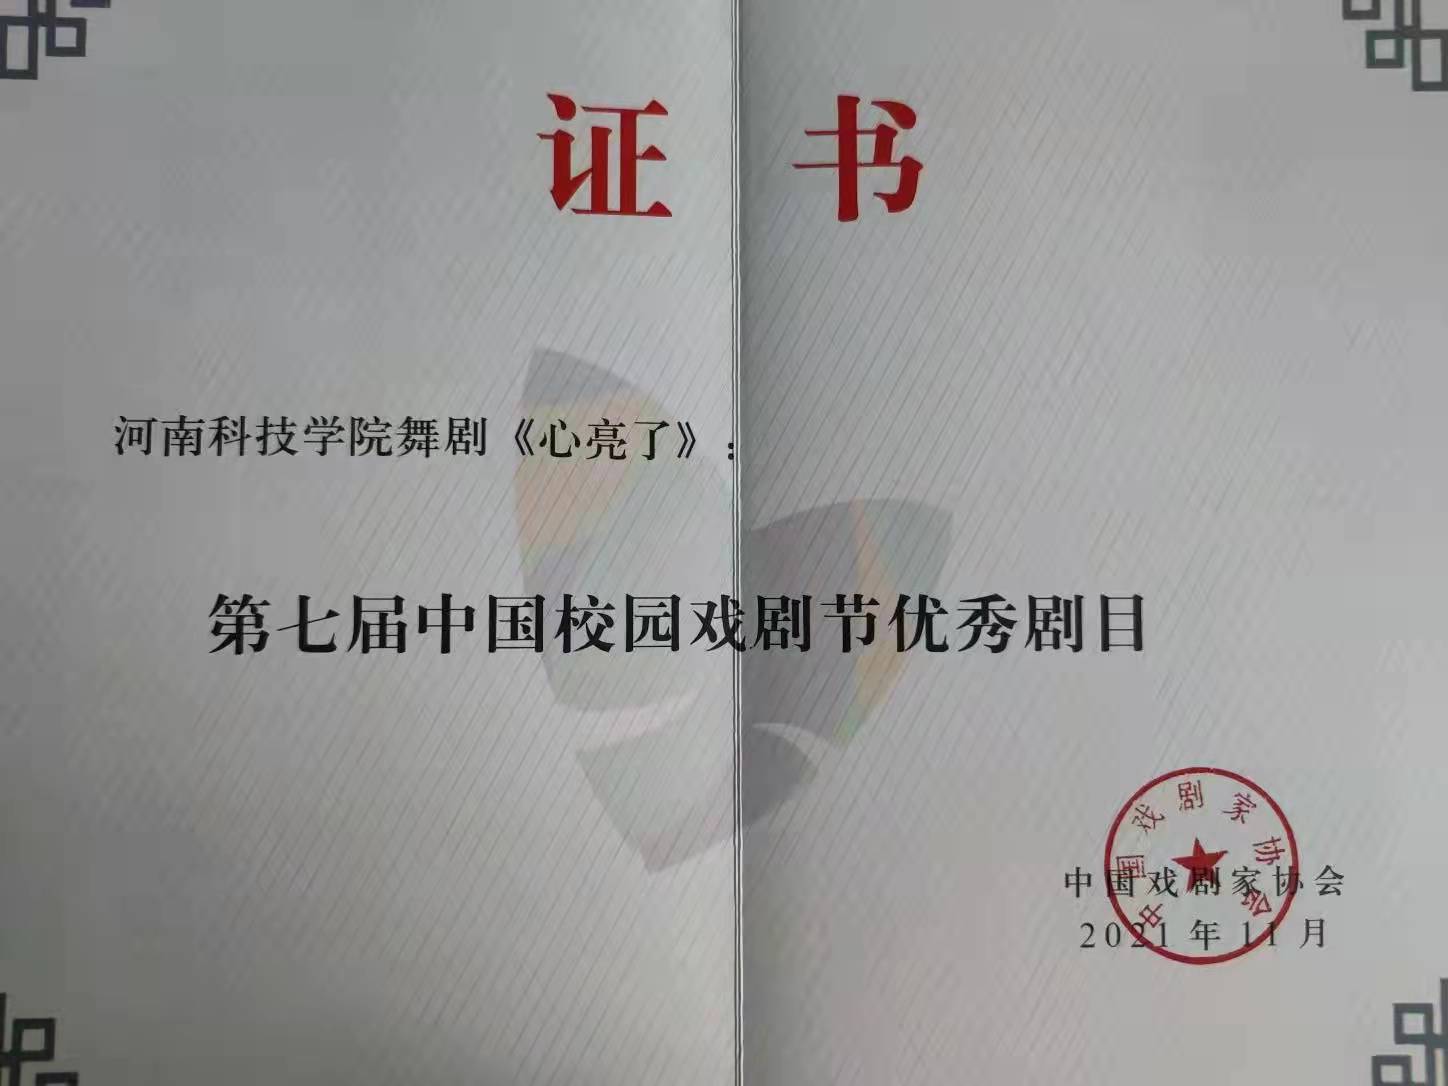 舞剧《心亮了》获第七届中国校园戏剧节优秀剧目奖